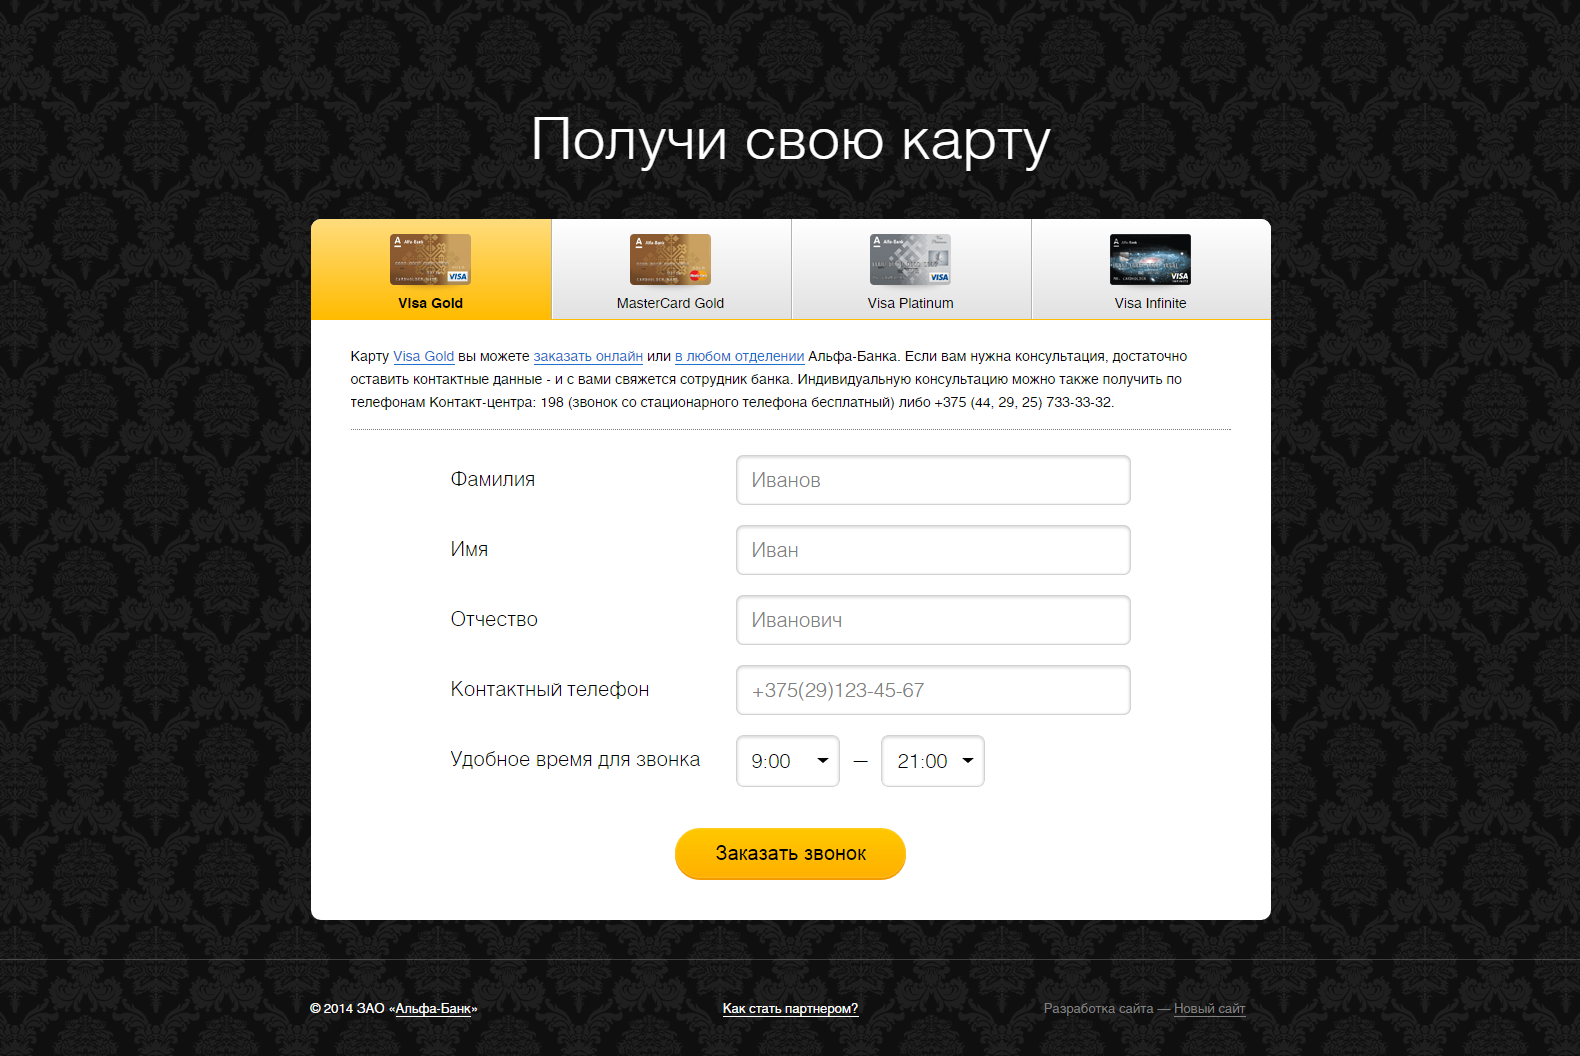 сайт премиальной программы golden alfa - банковские услуги - goldenalfa.by